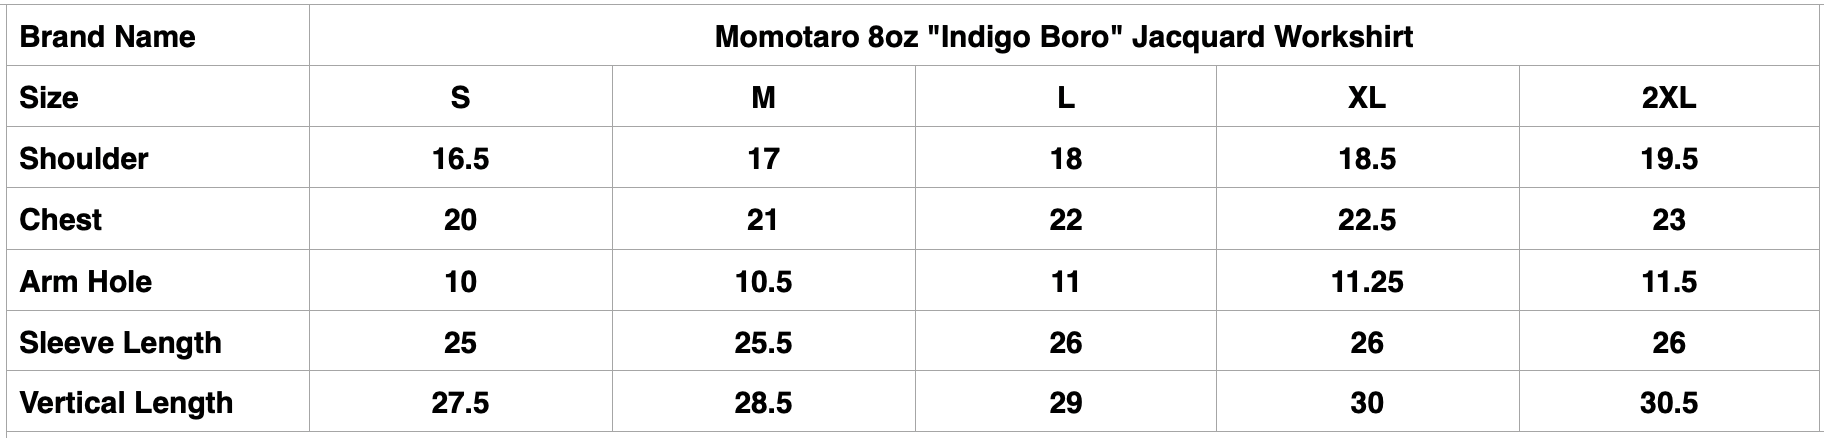 Momotaro 8oz "Indigo Boro" Jacquard Workshirt